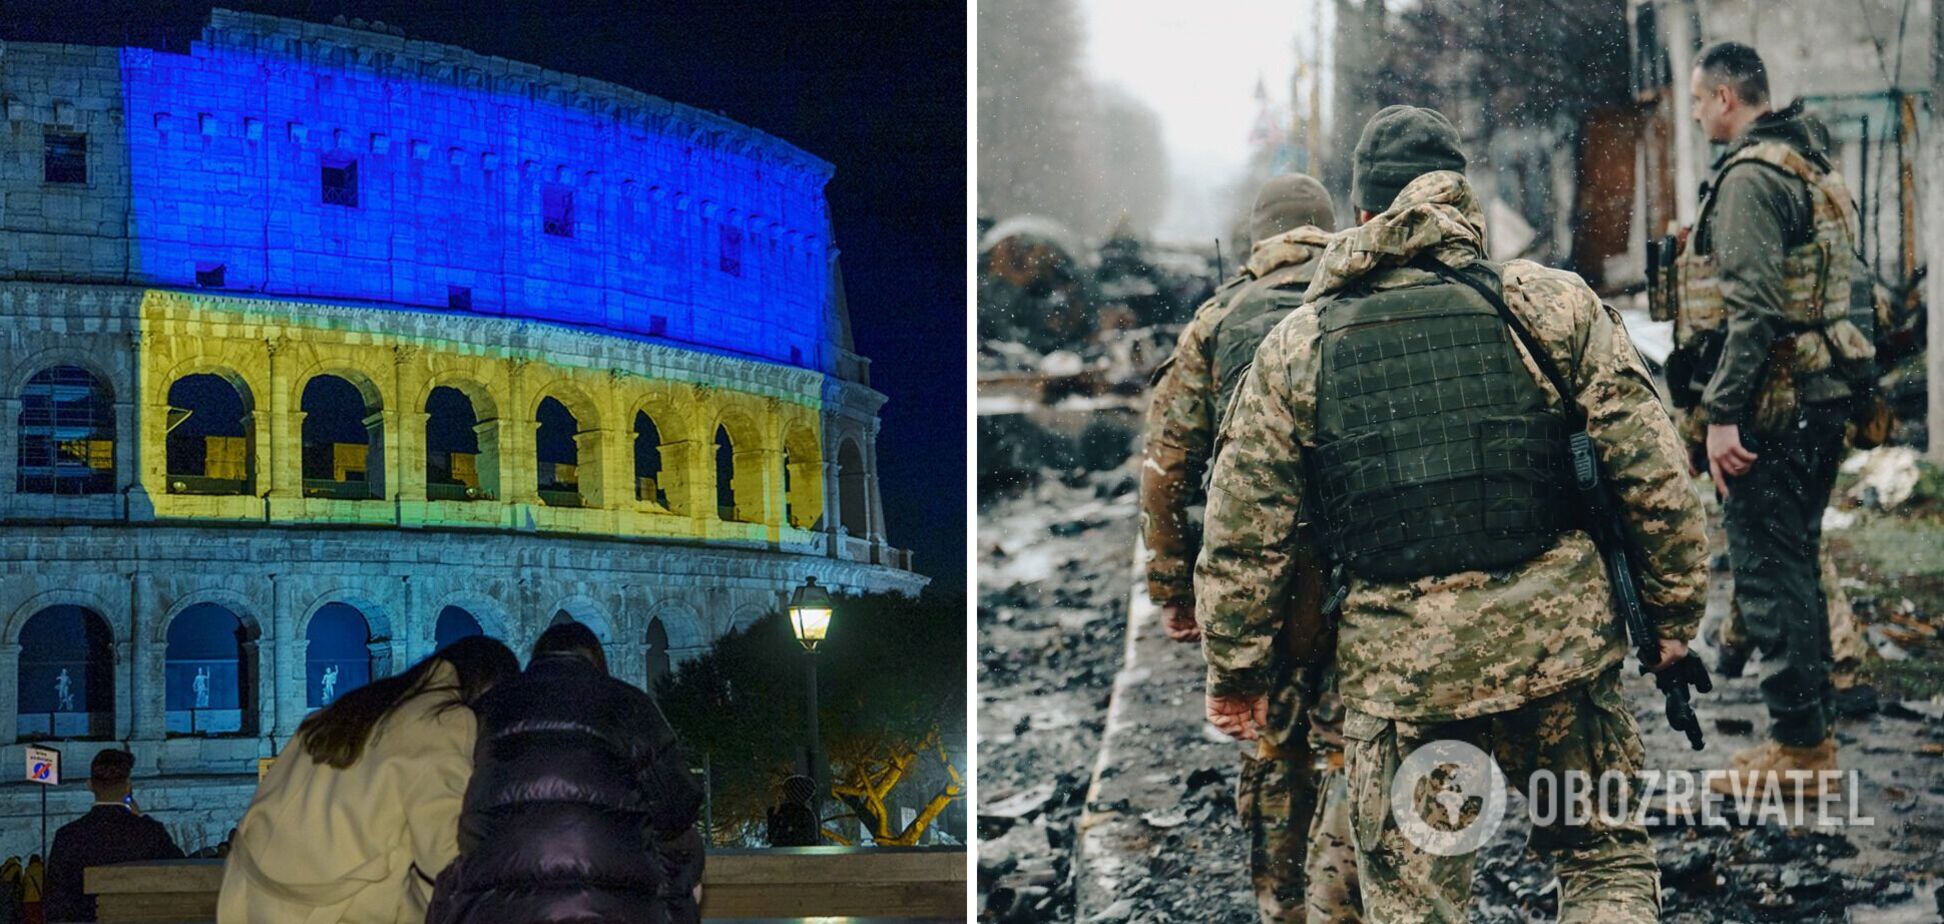 Италия инициирует проведение конференции по восстановлению Украины